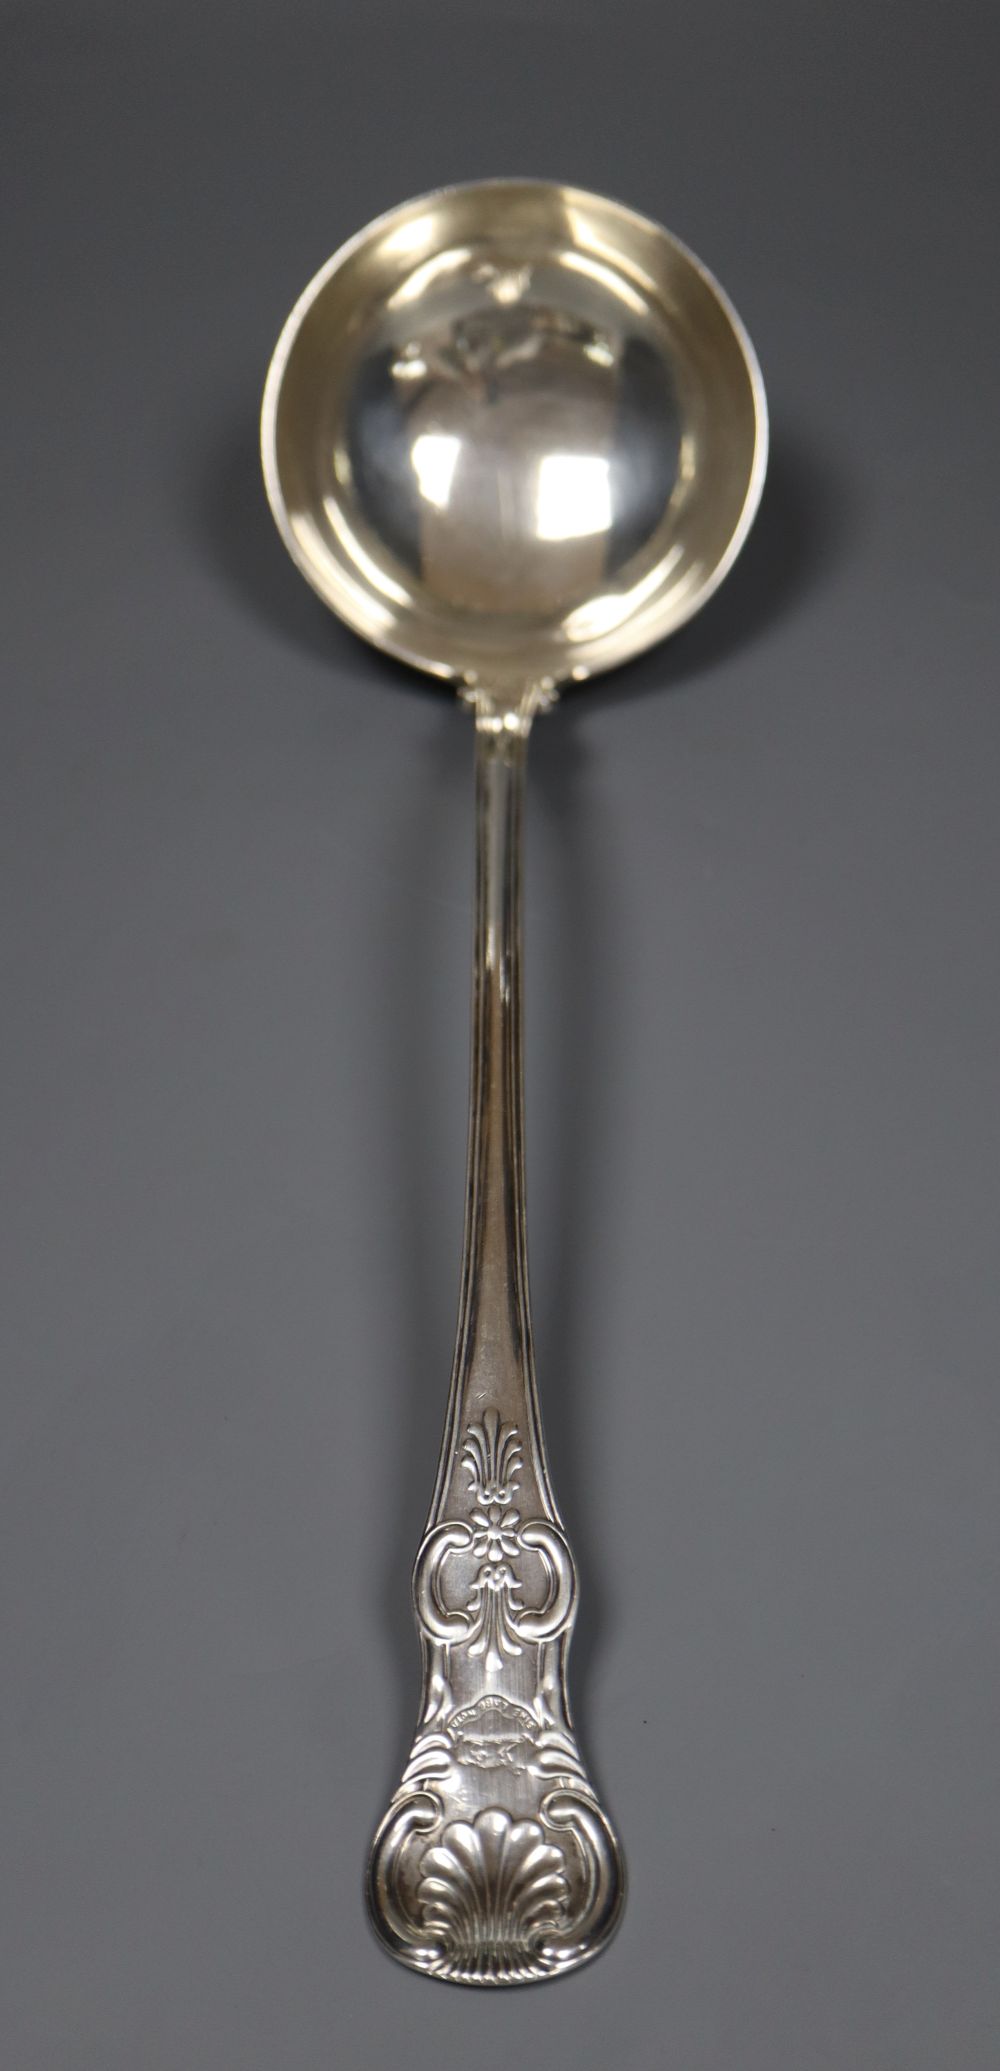 A William IV Scottish silver Queens pattern soup ladle, A*A, Glasgow, 1831, 36cm, 8.5oz.